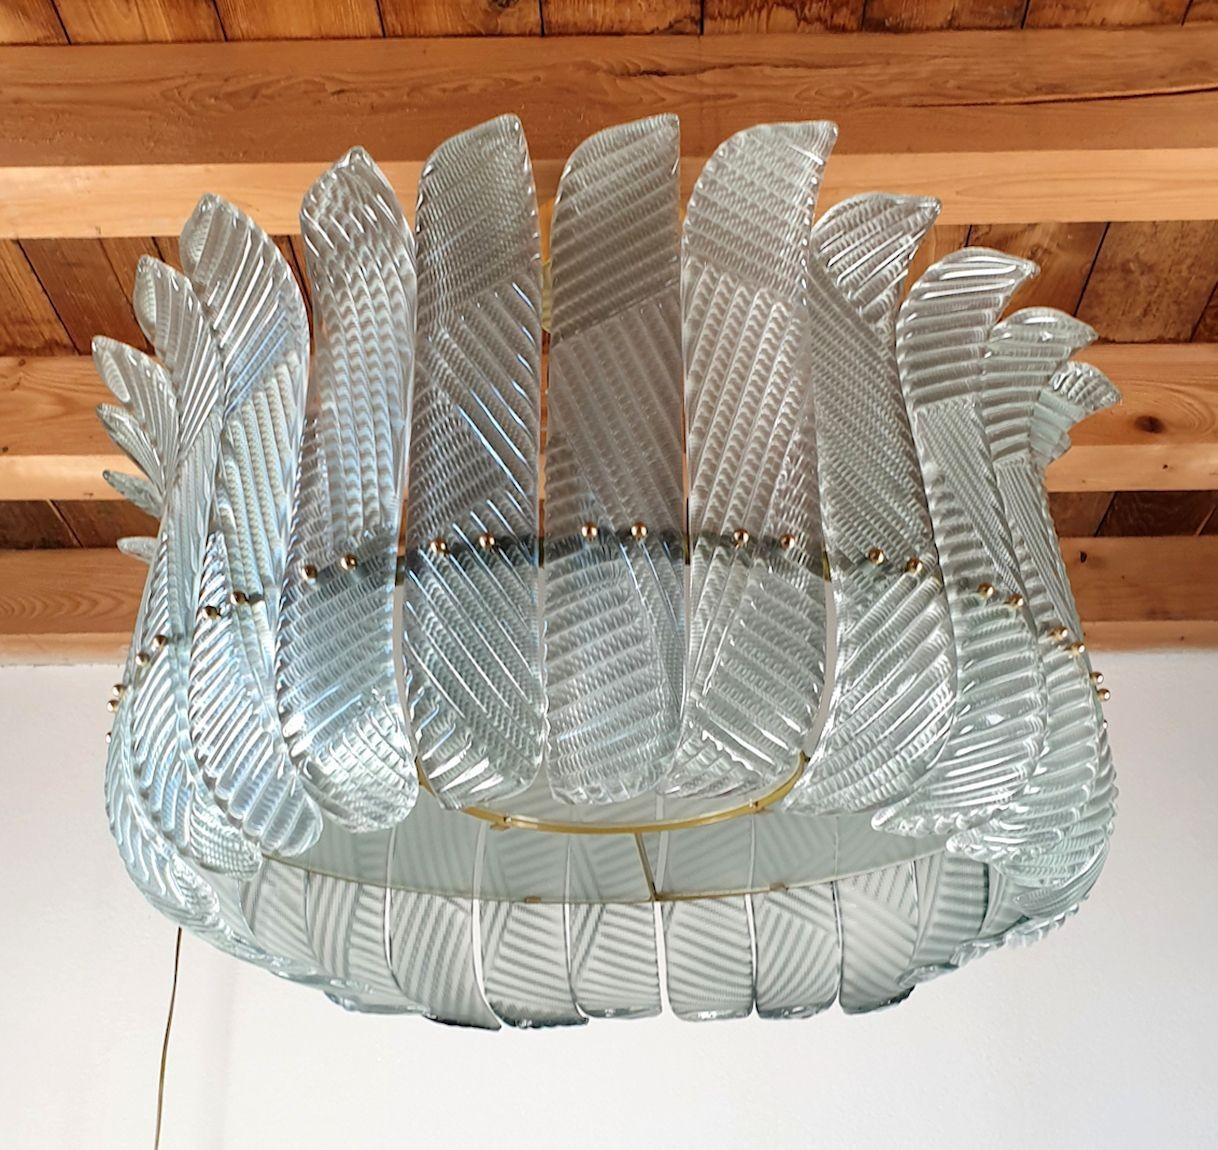 Großer Mid Century Modern Murano Glas Drum Kronleuchter, in der Art von Vistosi. Italien 1980er Jahre
Der Murano Vintage-Kronleuchter hat einen Baldachin aus Messing, ist aber fast bündig in die Decke eingelassen: Er bleibt sehr nah an der